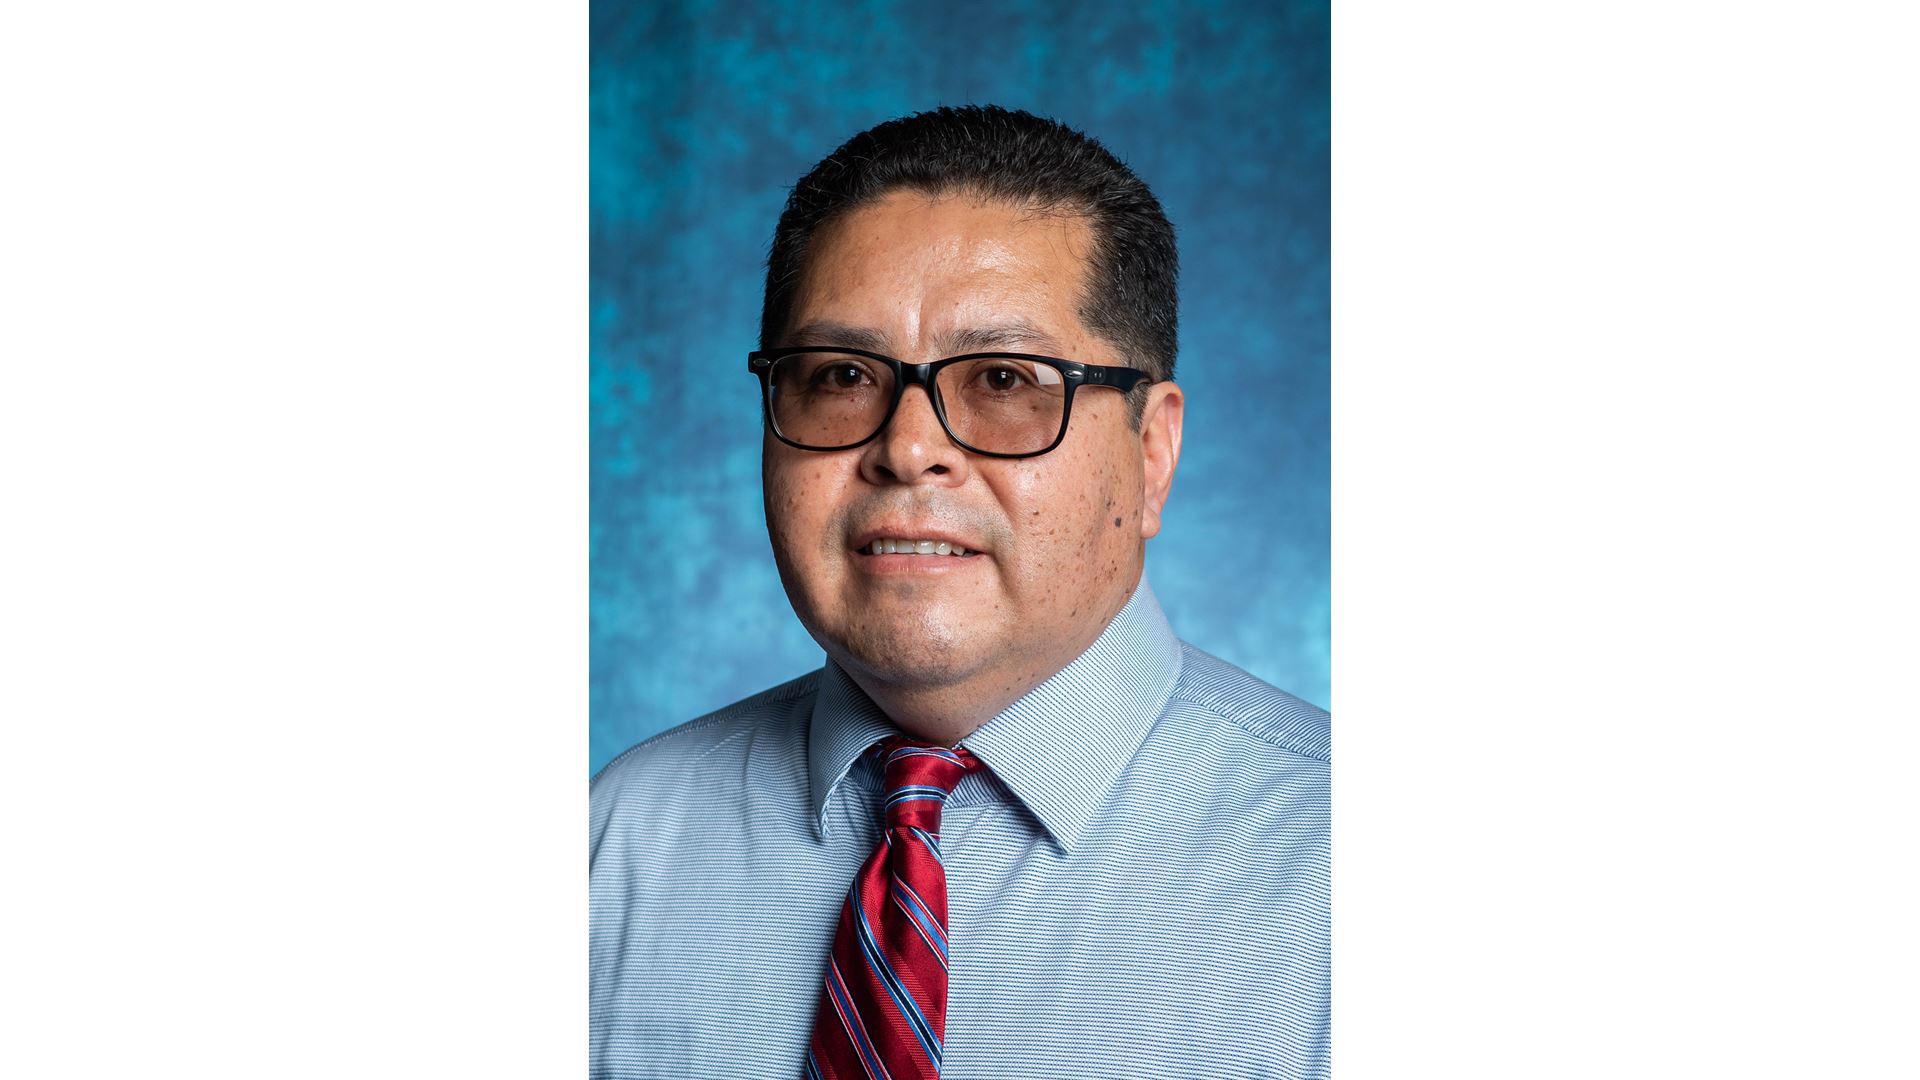 Meet Carlos Lobato: NMSU’s interim chief information security officer